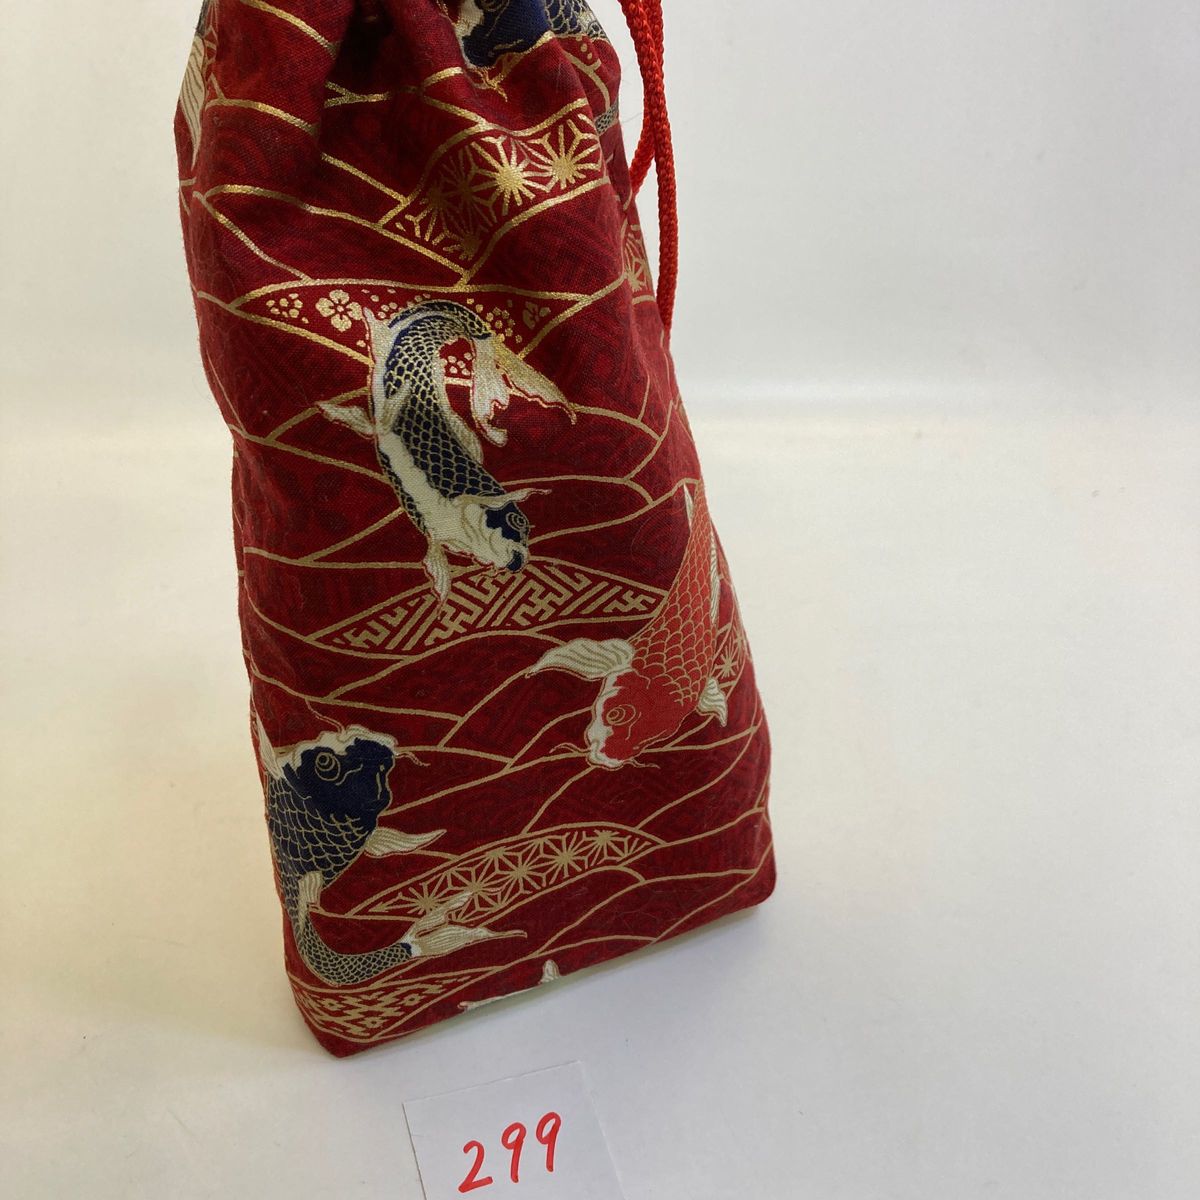 錦鯉、お香、香炉、線香筒:畳は赤の和紙、綺麗な花柄のお線香筒No.299